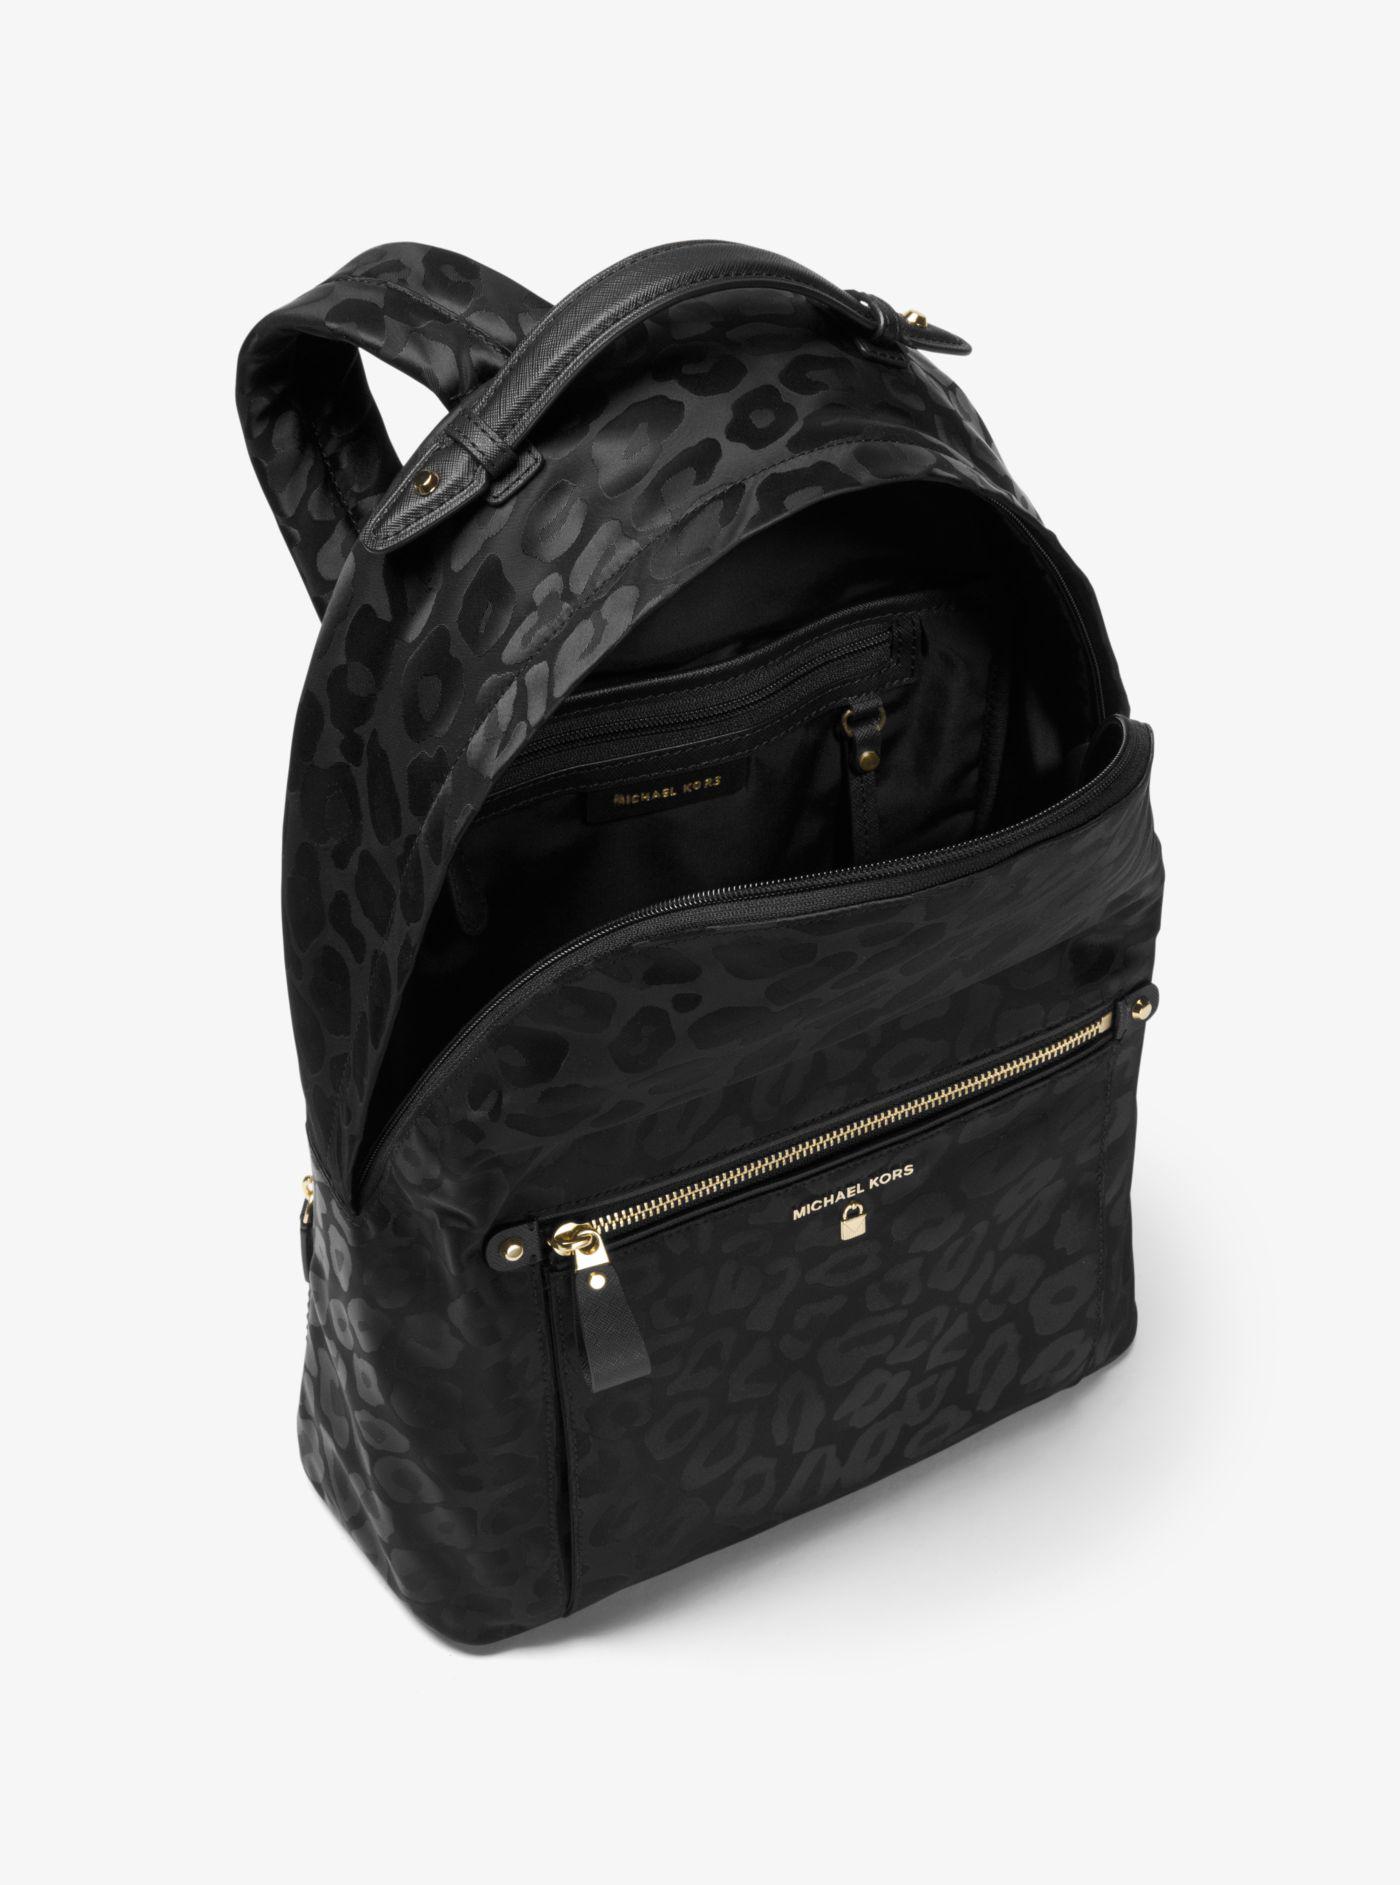 kelsey large backpack